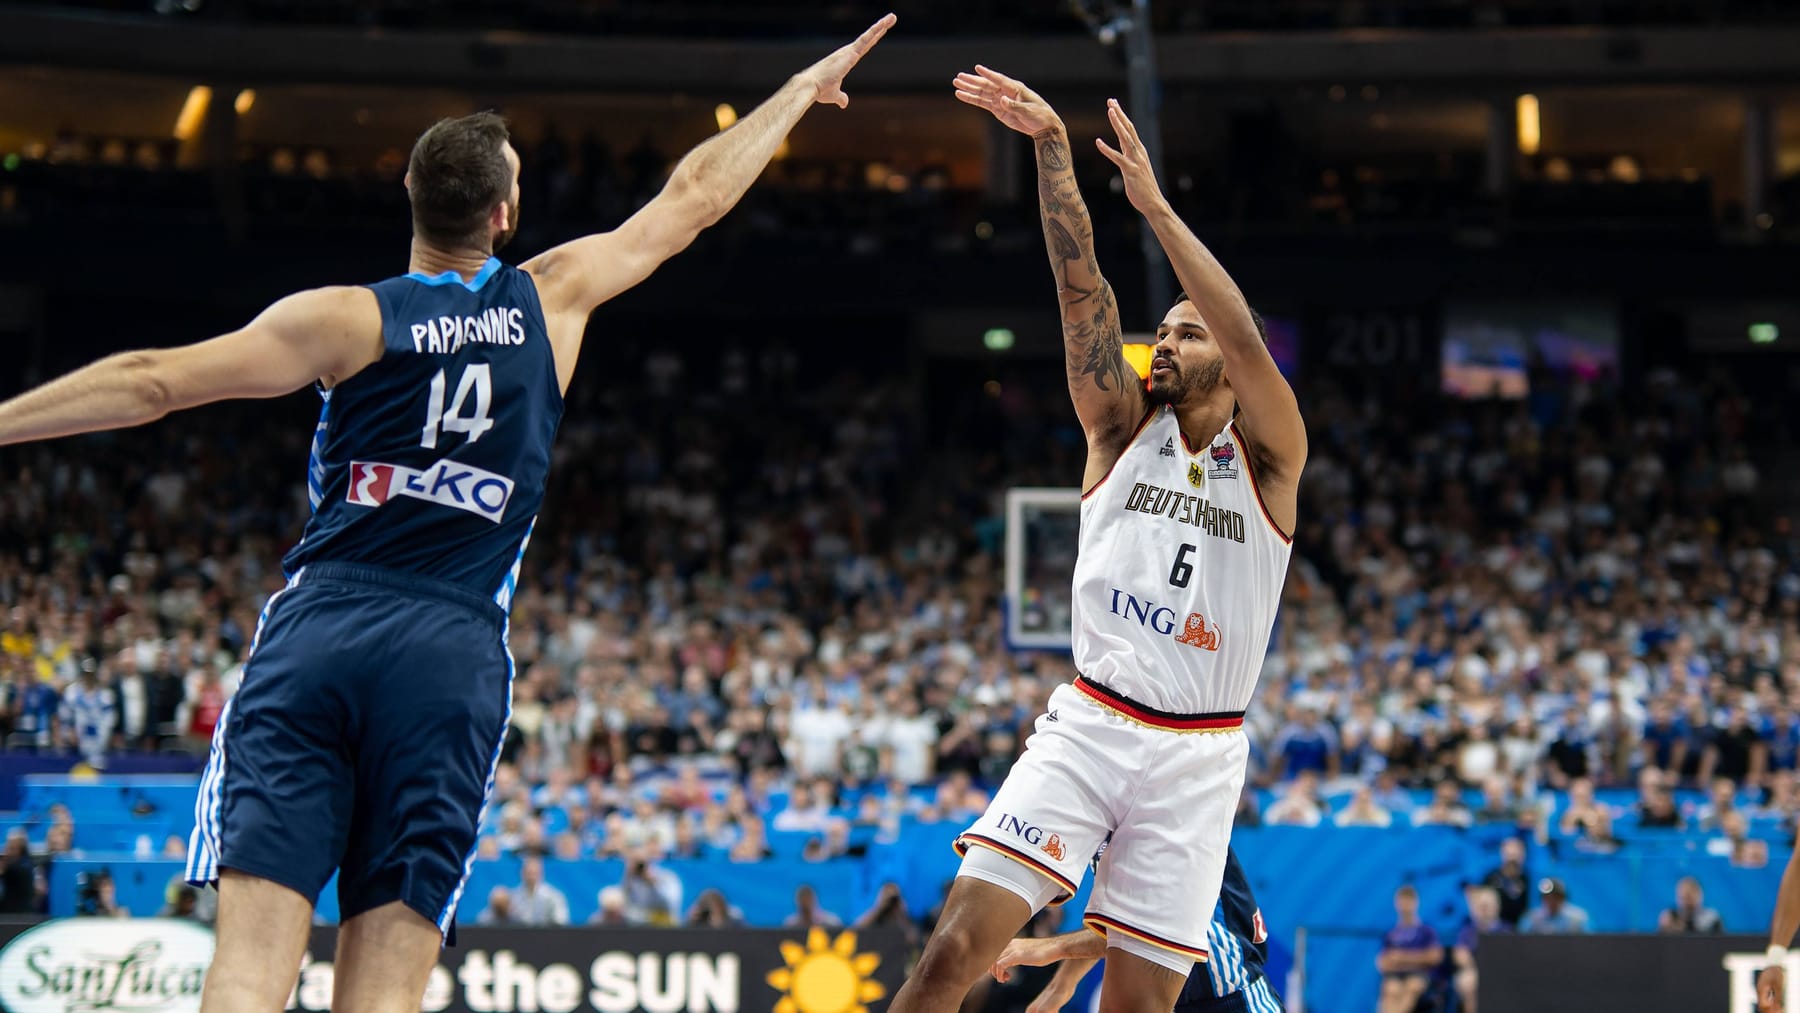 Basketball-EM 2022 RTL überträgt deutsches Halbfinale im Free-TV